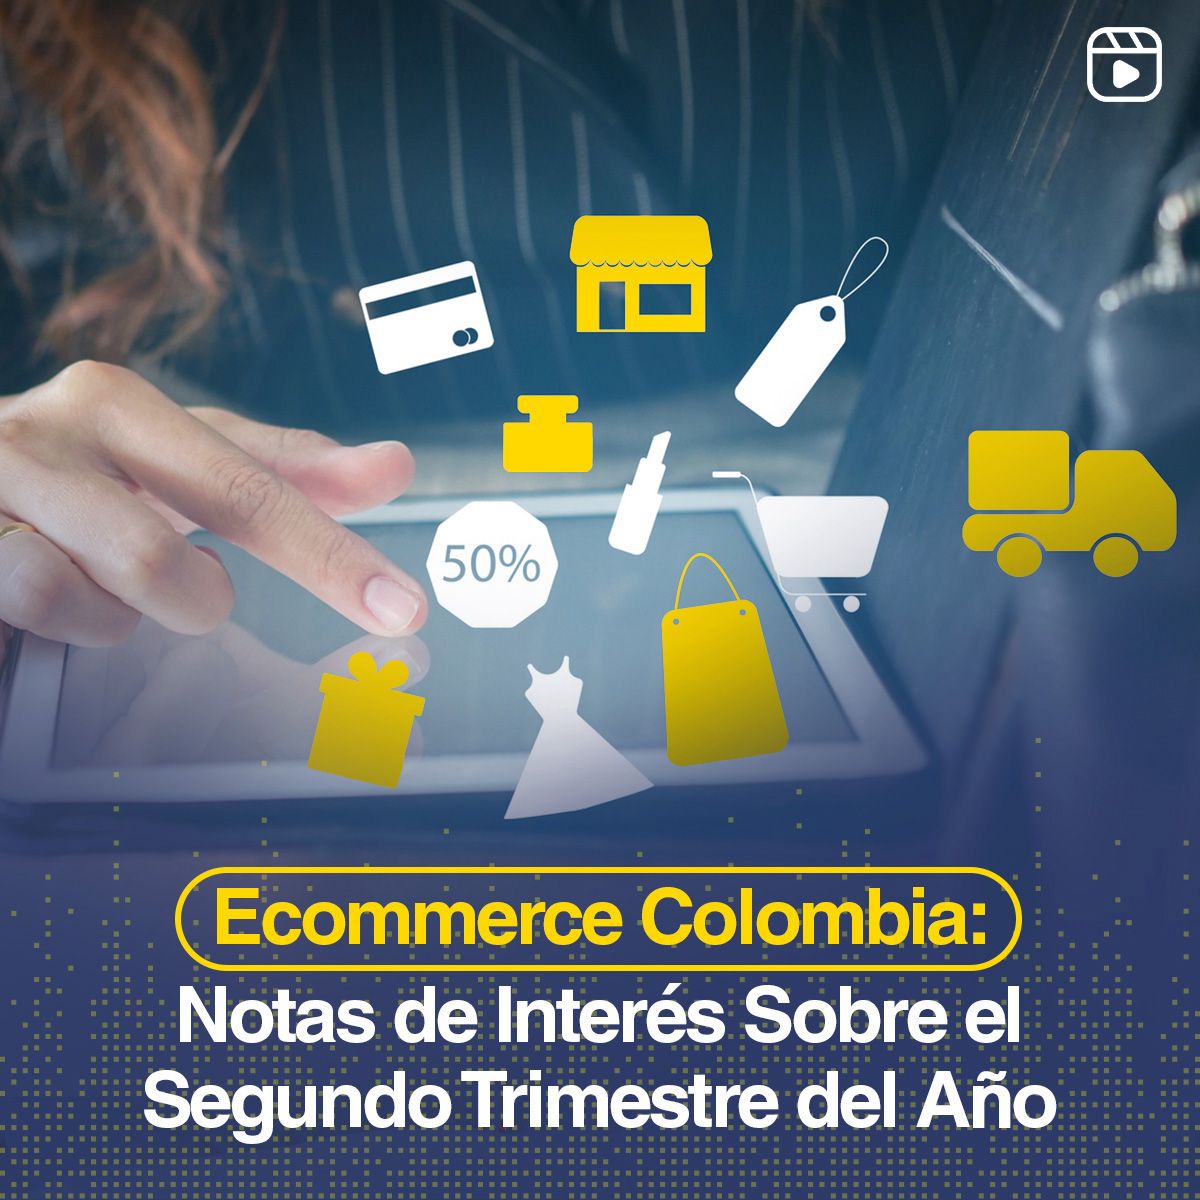 Ecommerce Colombia: Notas de Interés Sobre el Segundo Trimestre del Año